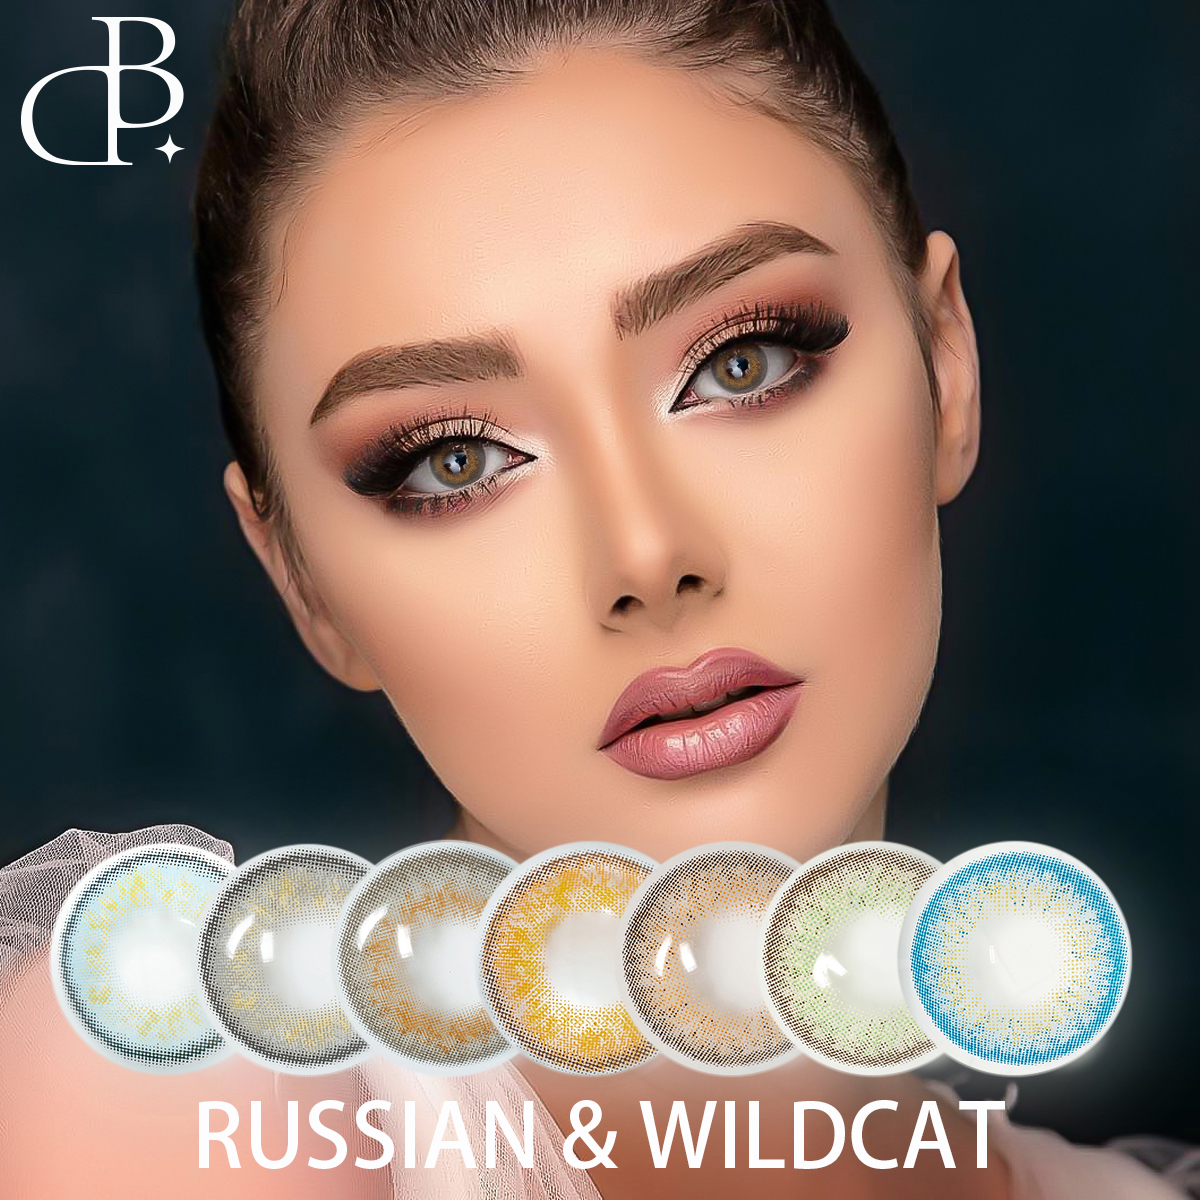 Russian&wild-cat Kolore naturaleko begi lenteak Handizkako kolore bigunetako ukipen lenteak errezetatutako ukipen lenteak Doako bidalketa